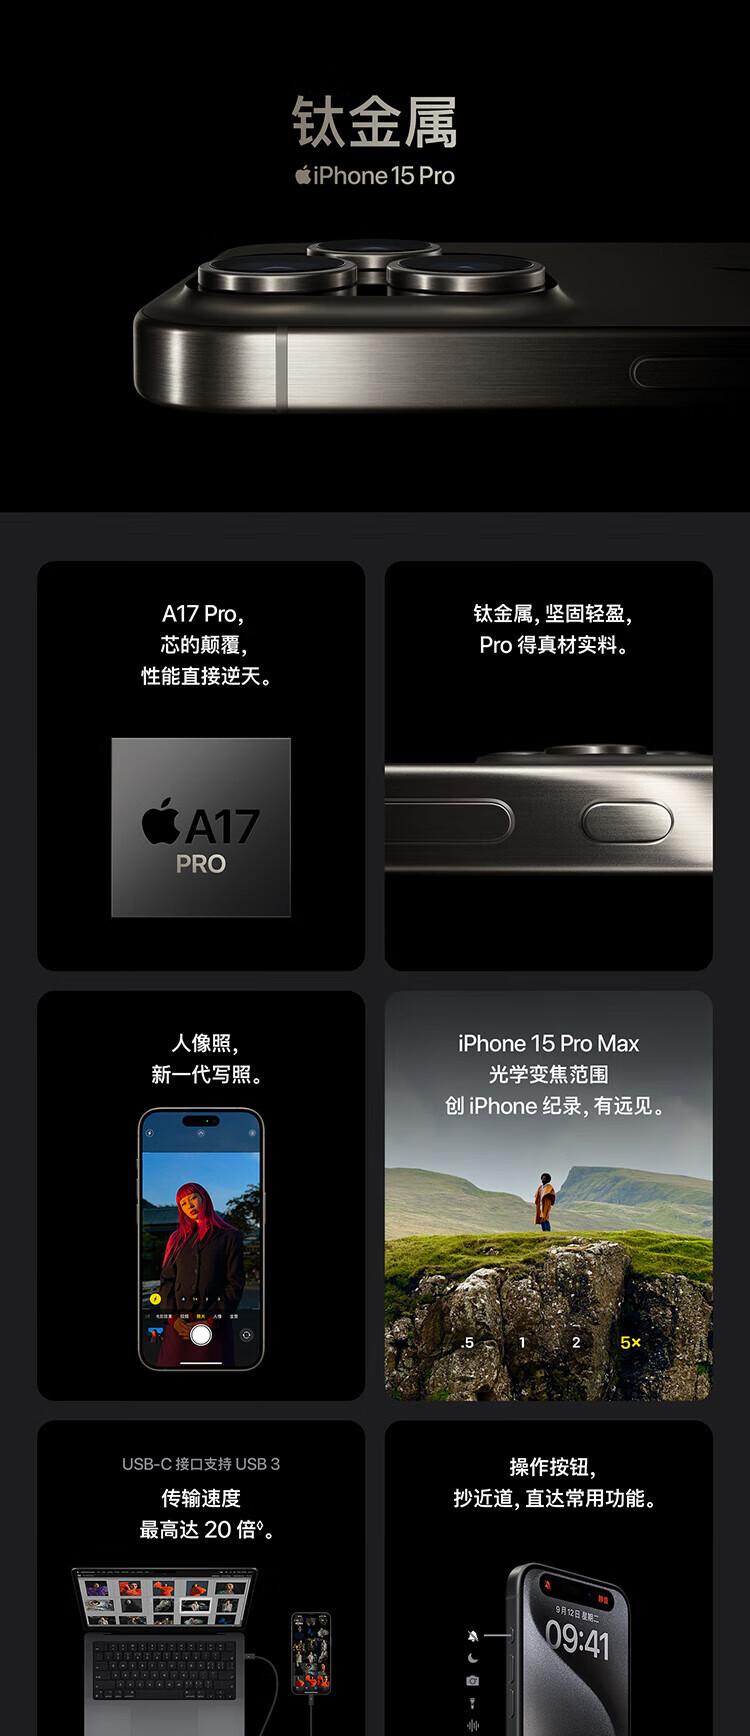 苹果/APPLE iPhone 15 pro max 手机 双卡双待 全网通5